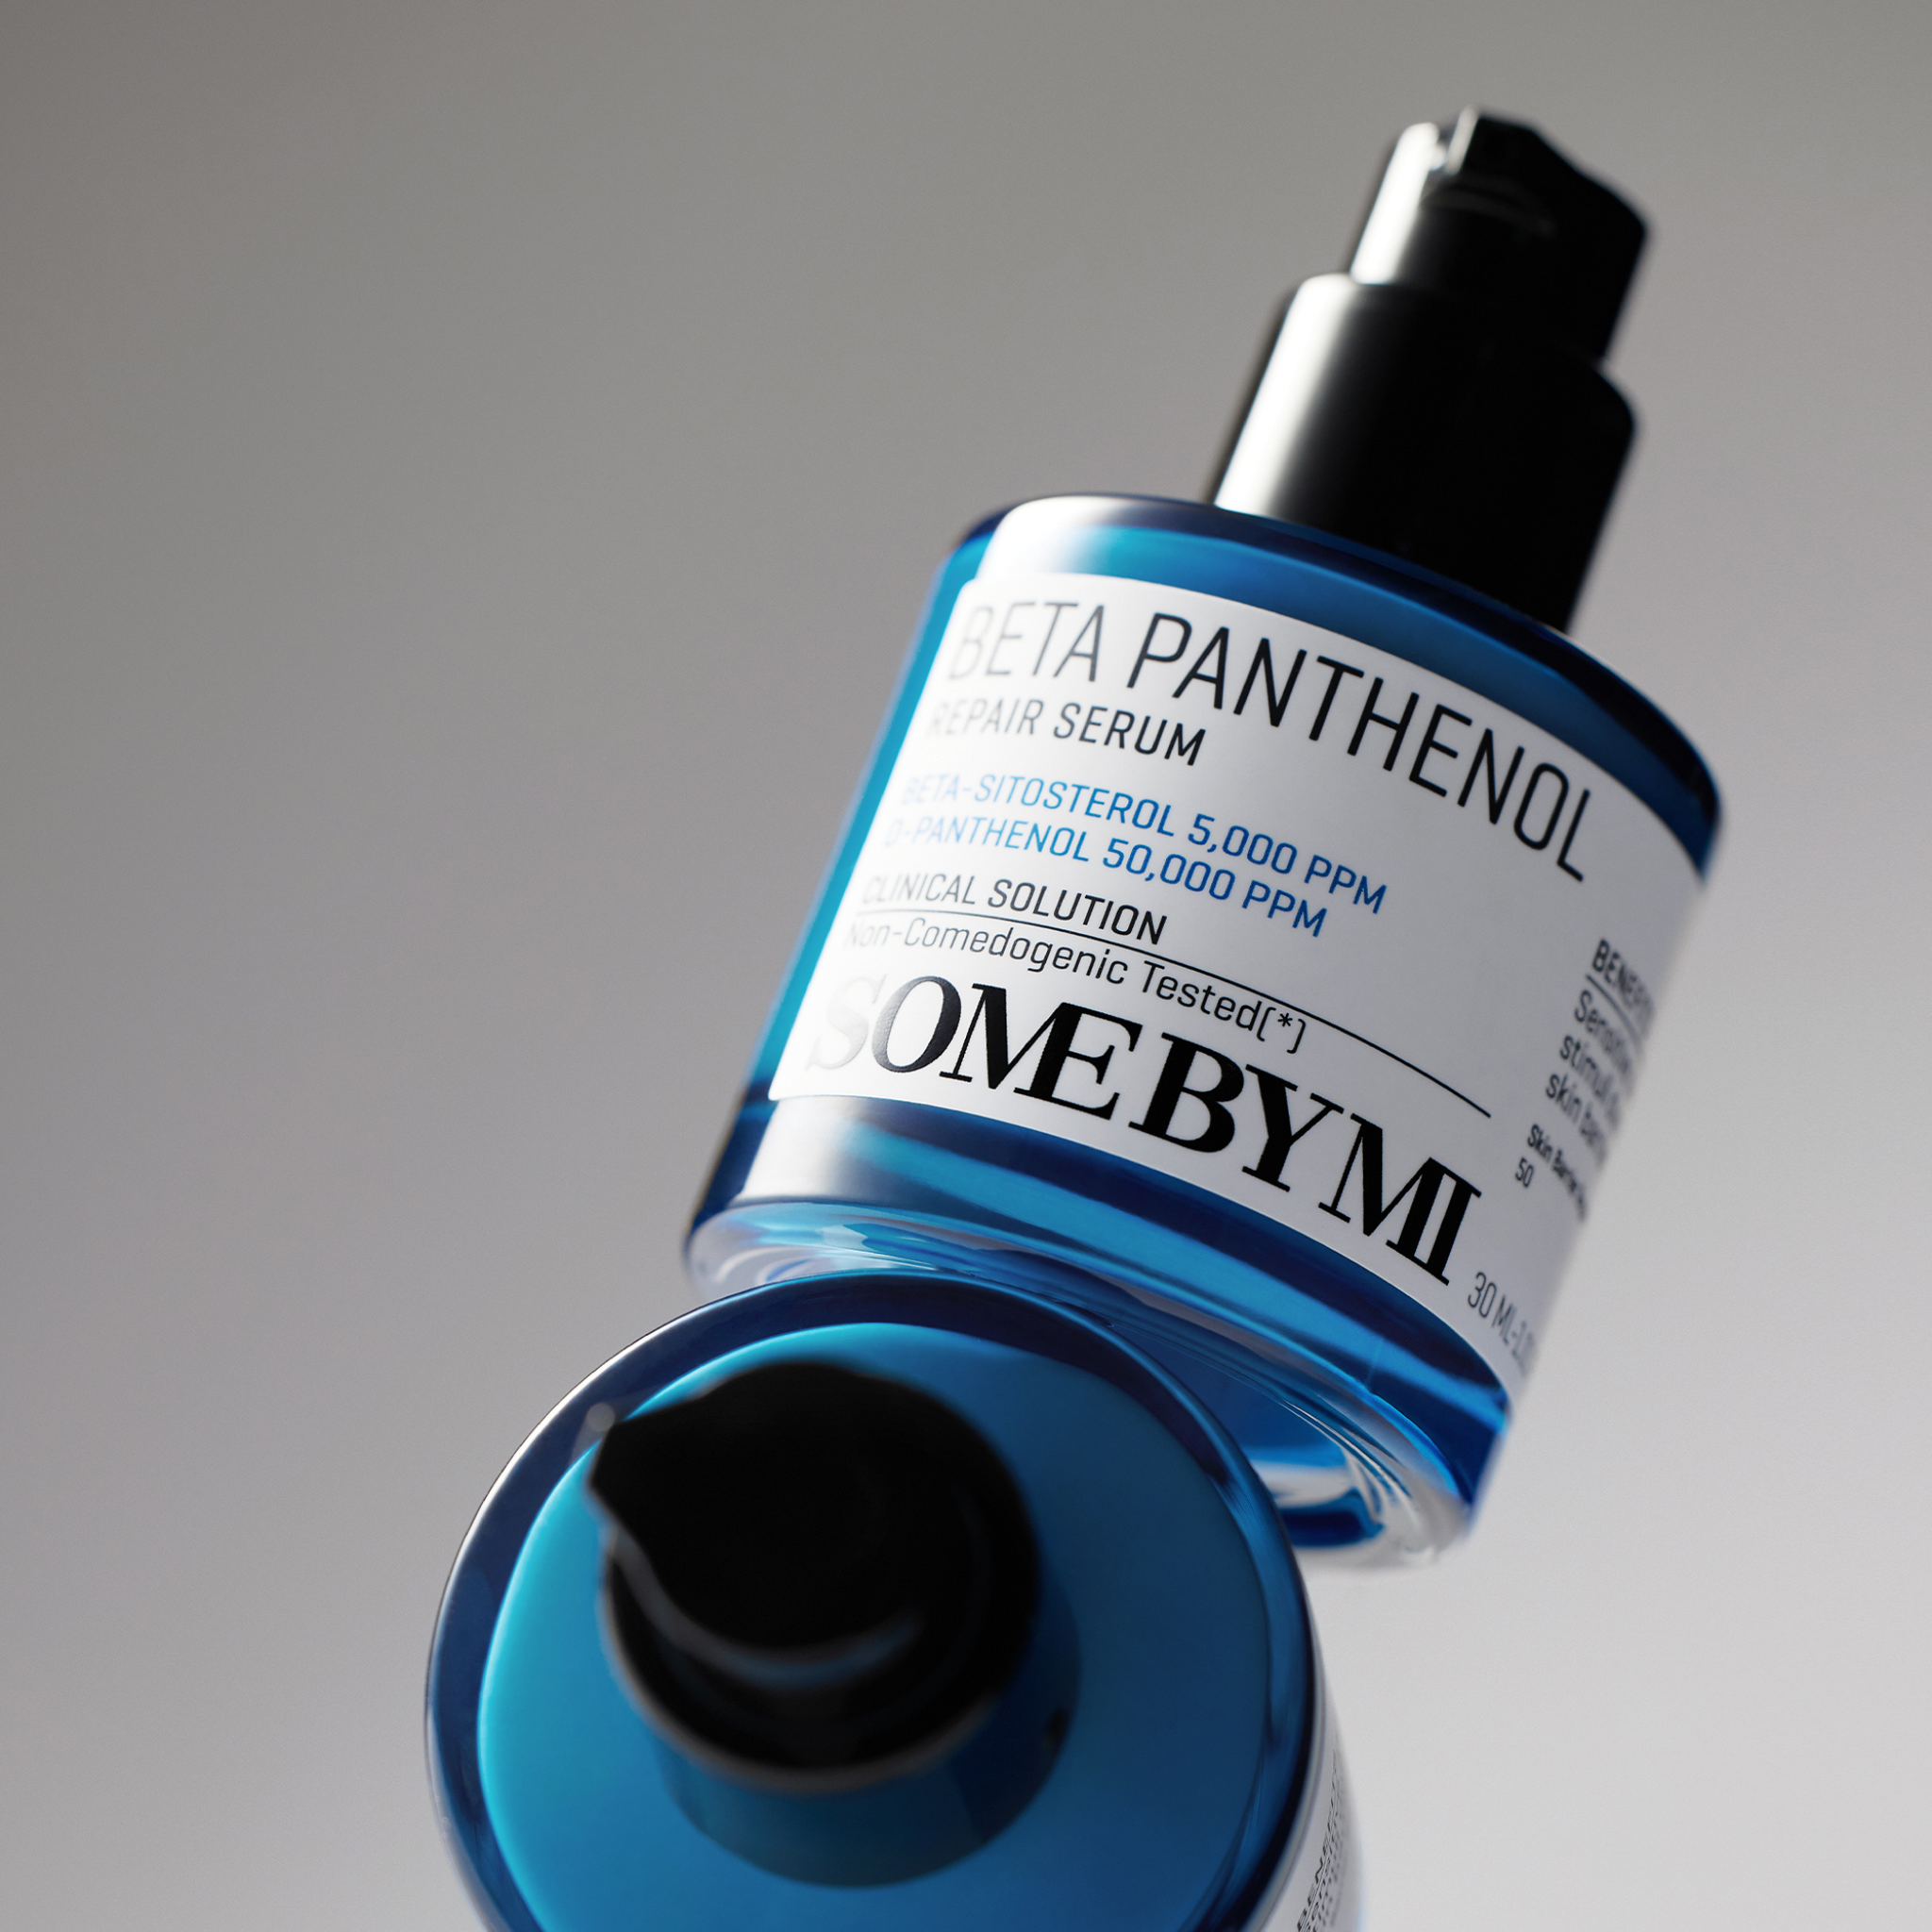 SOME BY MI Beta Panthenol Repair Serum (30ml) skin barrier repair